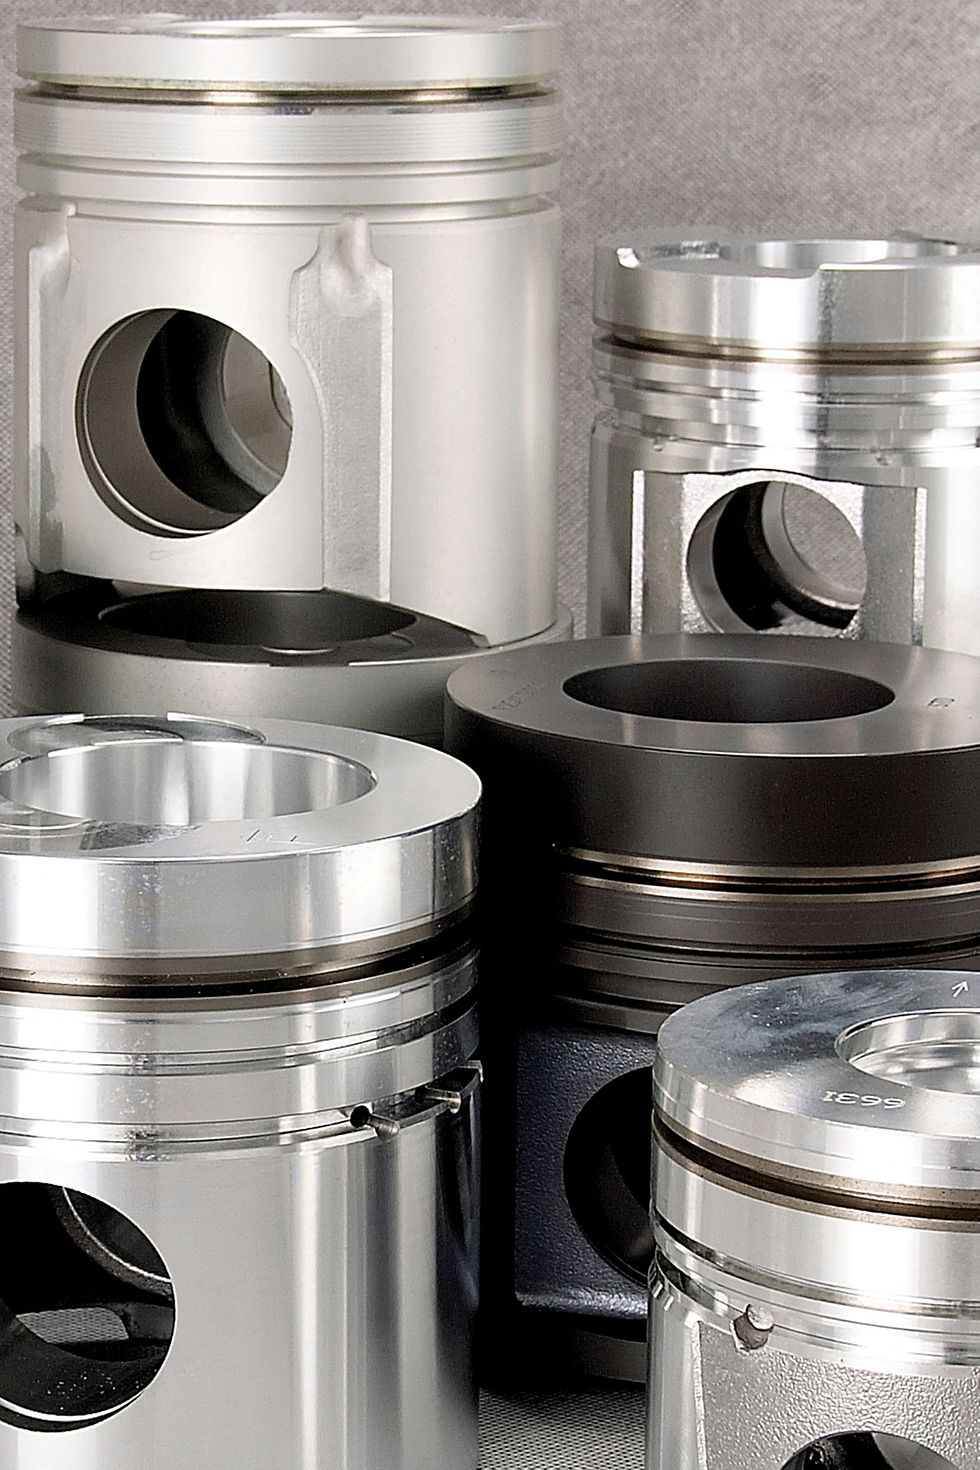 Henkel bietet eine differenzierte Produktpalette von elektrokeramischen Beschichtungen, die sich unter anderem für die Beschichtung von Motorkolben eignen.